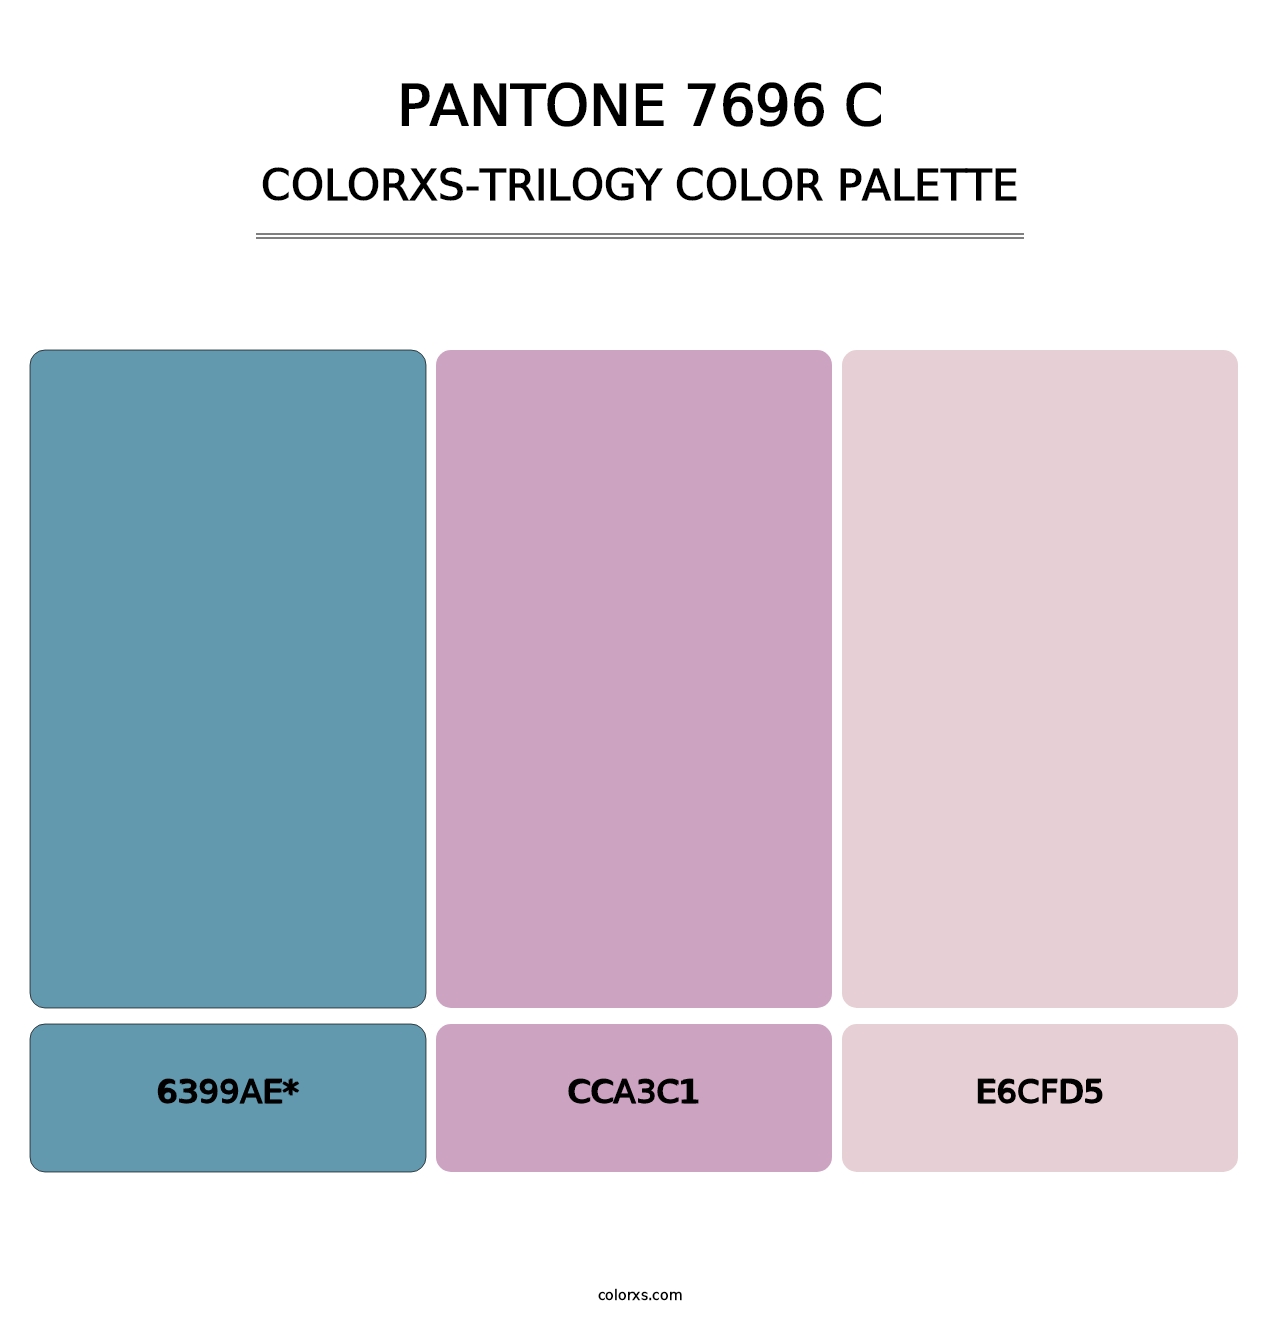 PANTONE 7696 C - Colorxs Trilogy Palette